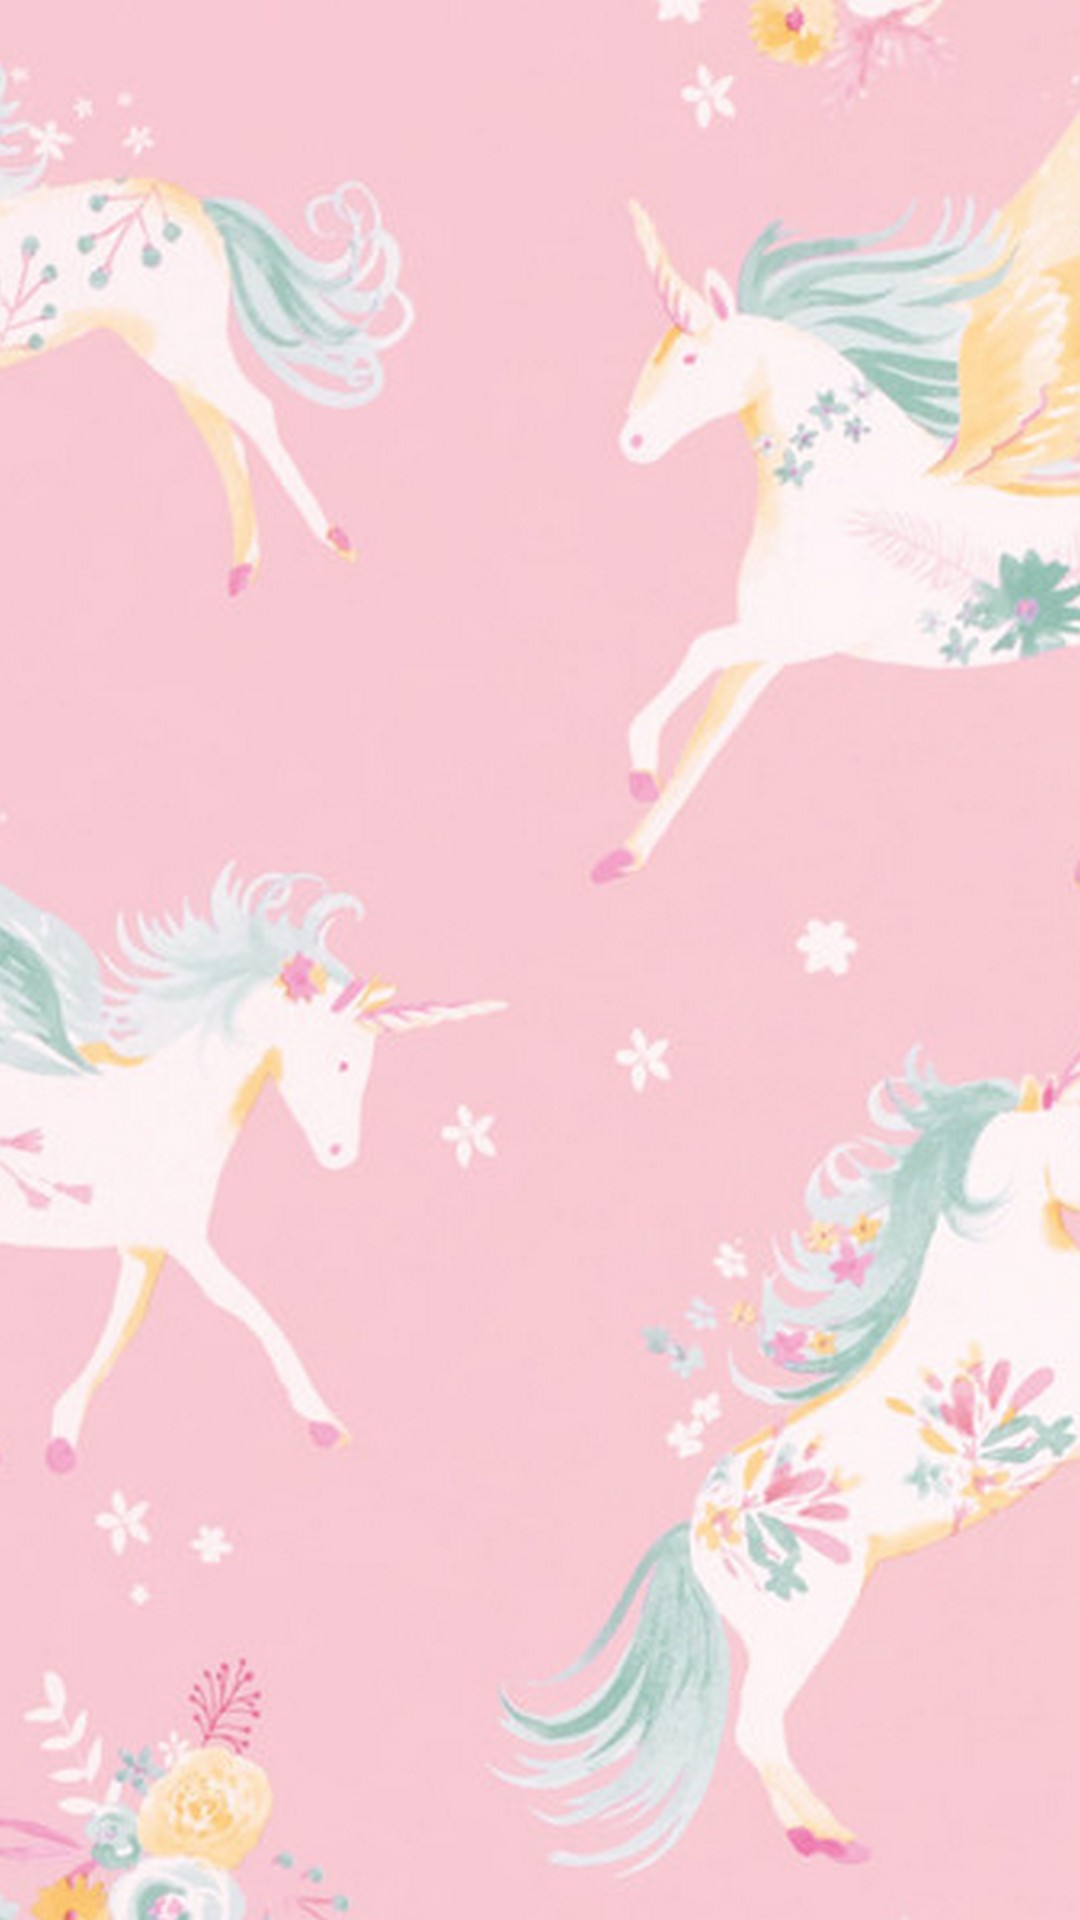 carta da parati unicorno,rosa,unicorno,personaggio fittizio,creatura mitica,illustrazione